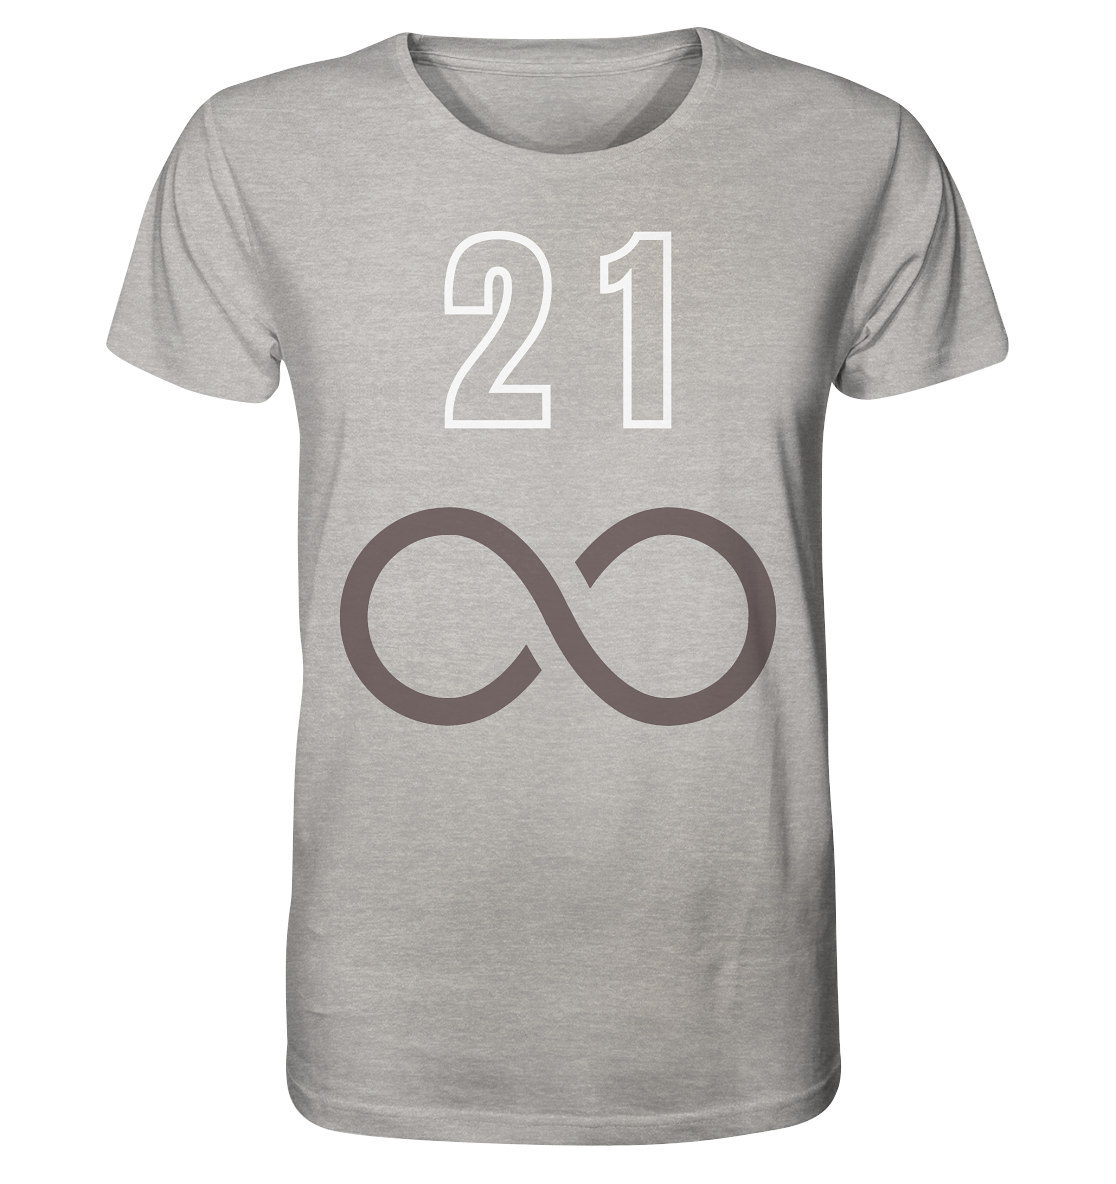 21 unendlich - Organic Shirt (meliert)